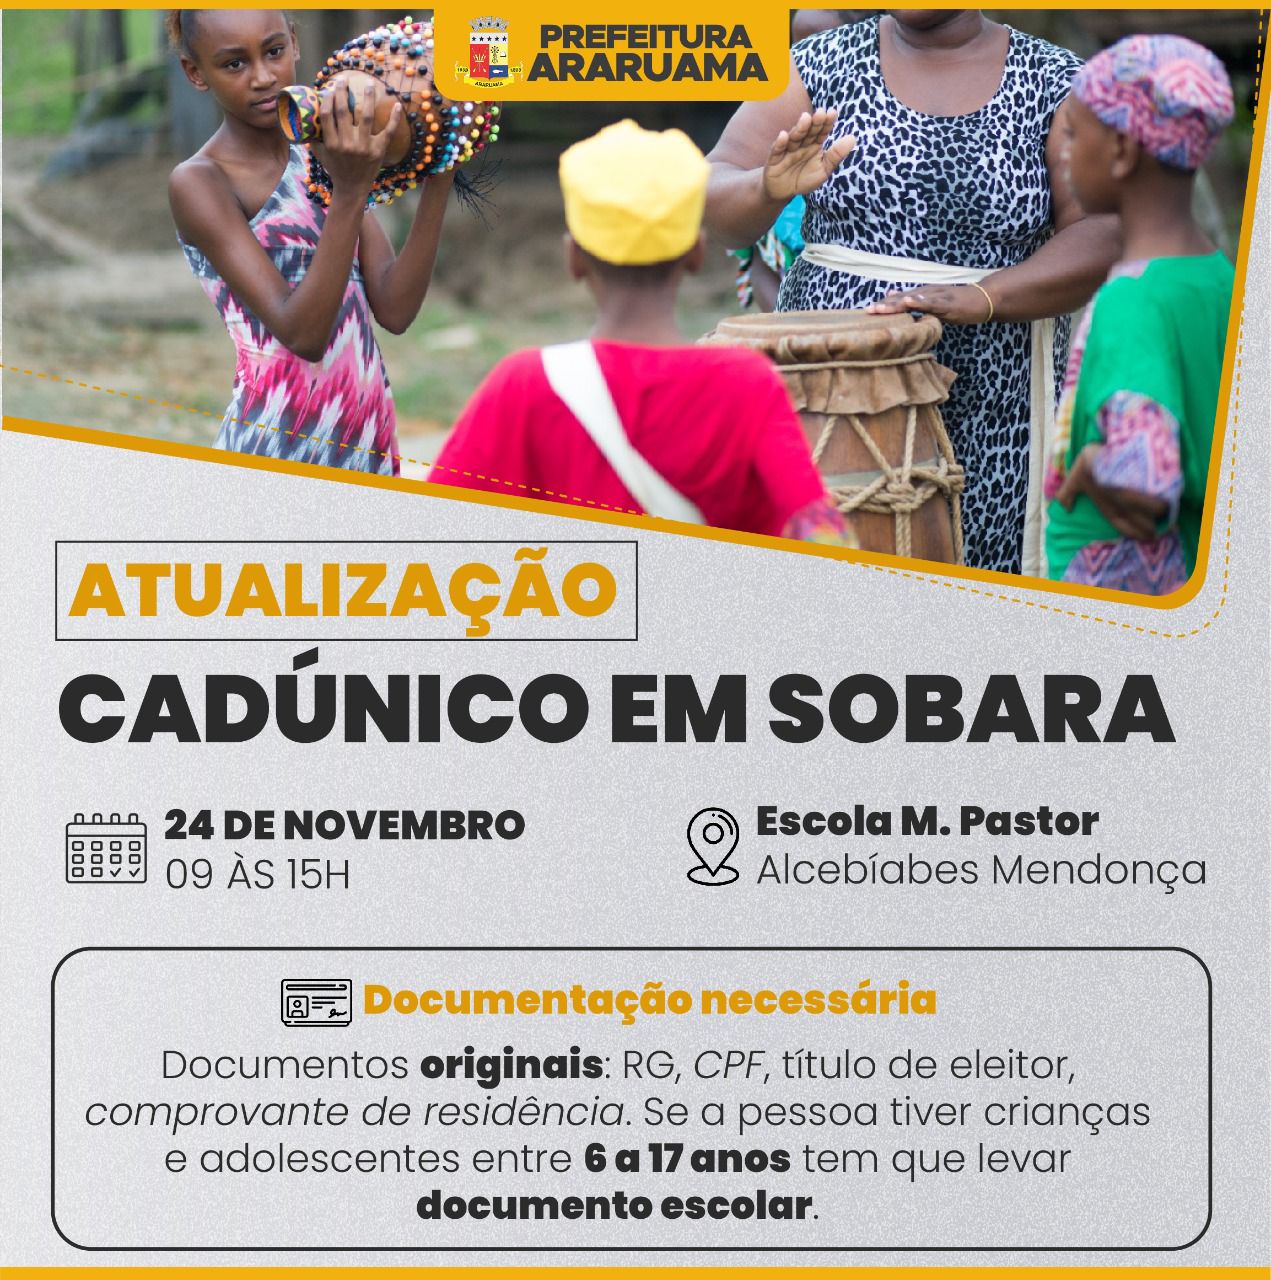 Prefeitura de Araruma vai realizar atualização do Cadastro Único na comunidade quilombola da Sobara